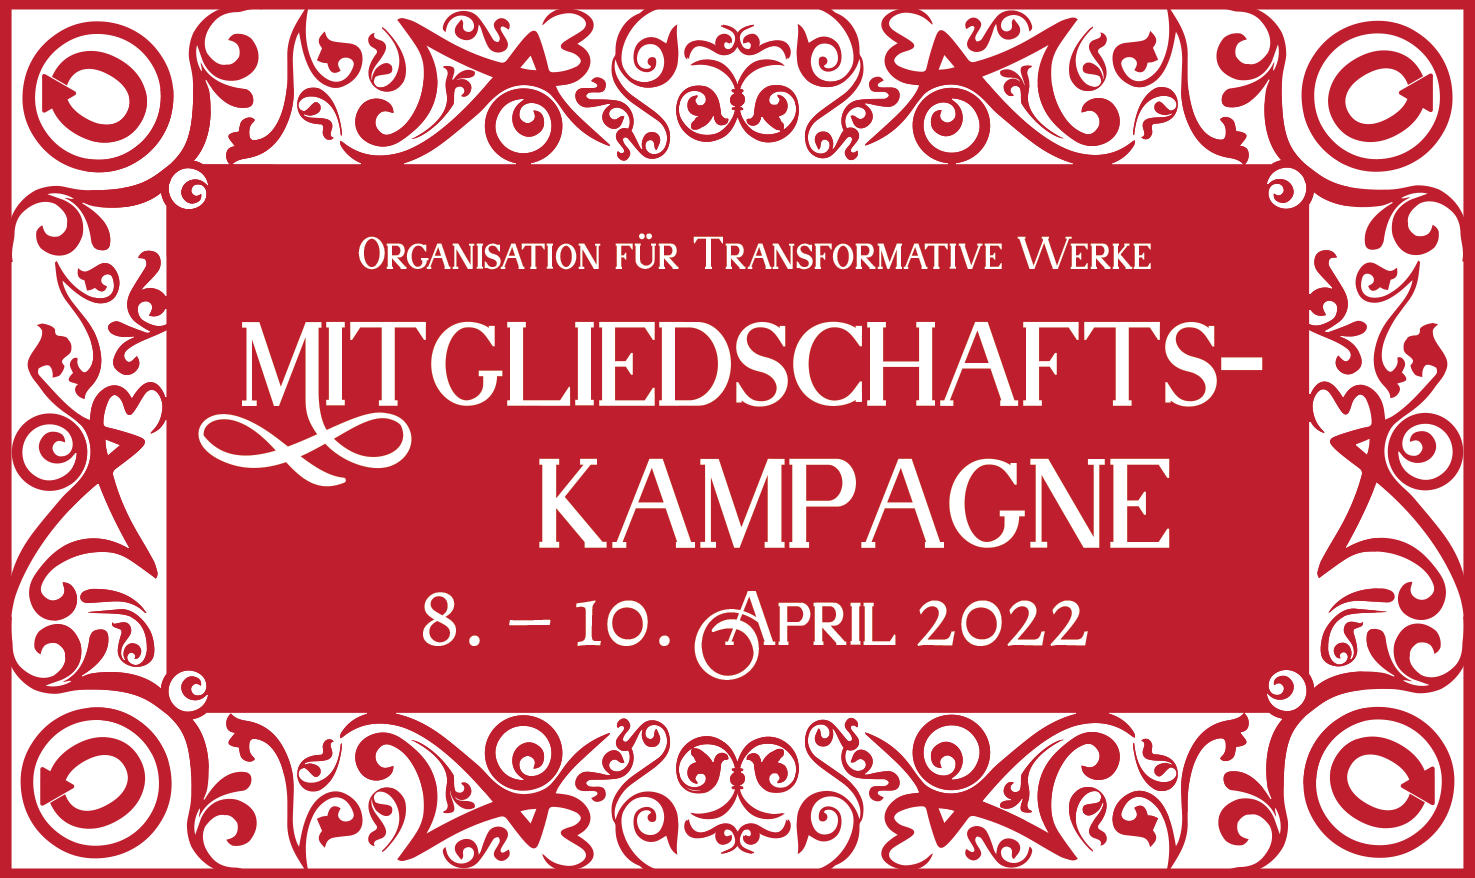 Mitgliedschaftskampagne der Organisation für Transformative Werke, 8. – 10. April 2022